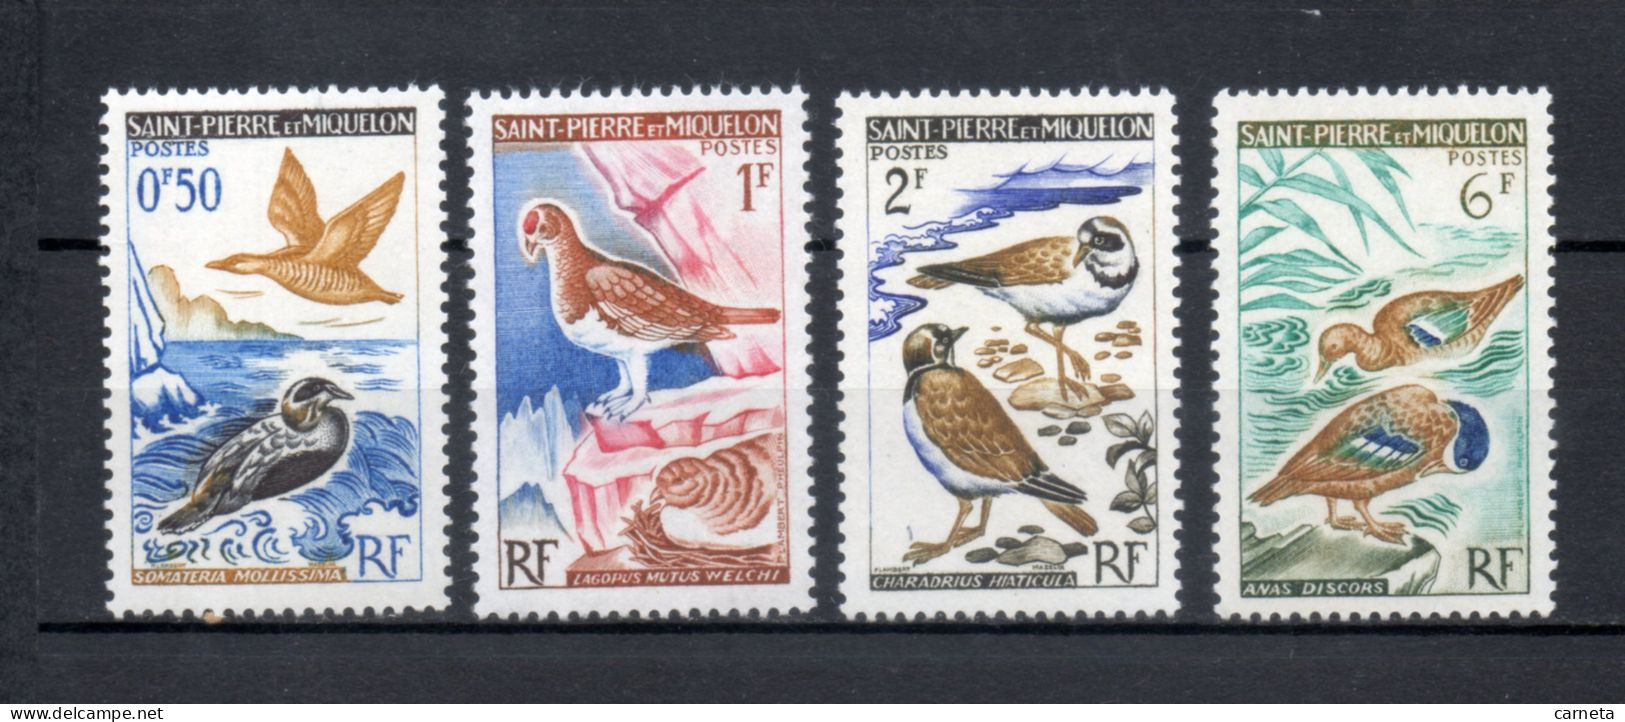 SAINT PIERRE ET MIQUELON N° 364 à 367    NEUFS SANS CHARNIERE COTE  8.80€     OISEAUX ANIMAUX FAUNE - Unused Stamps